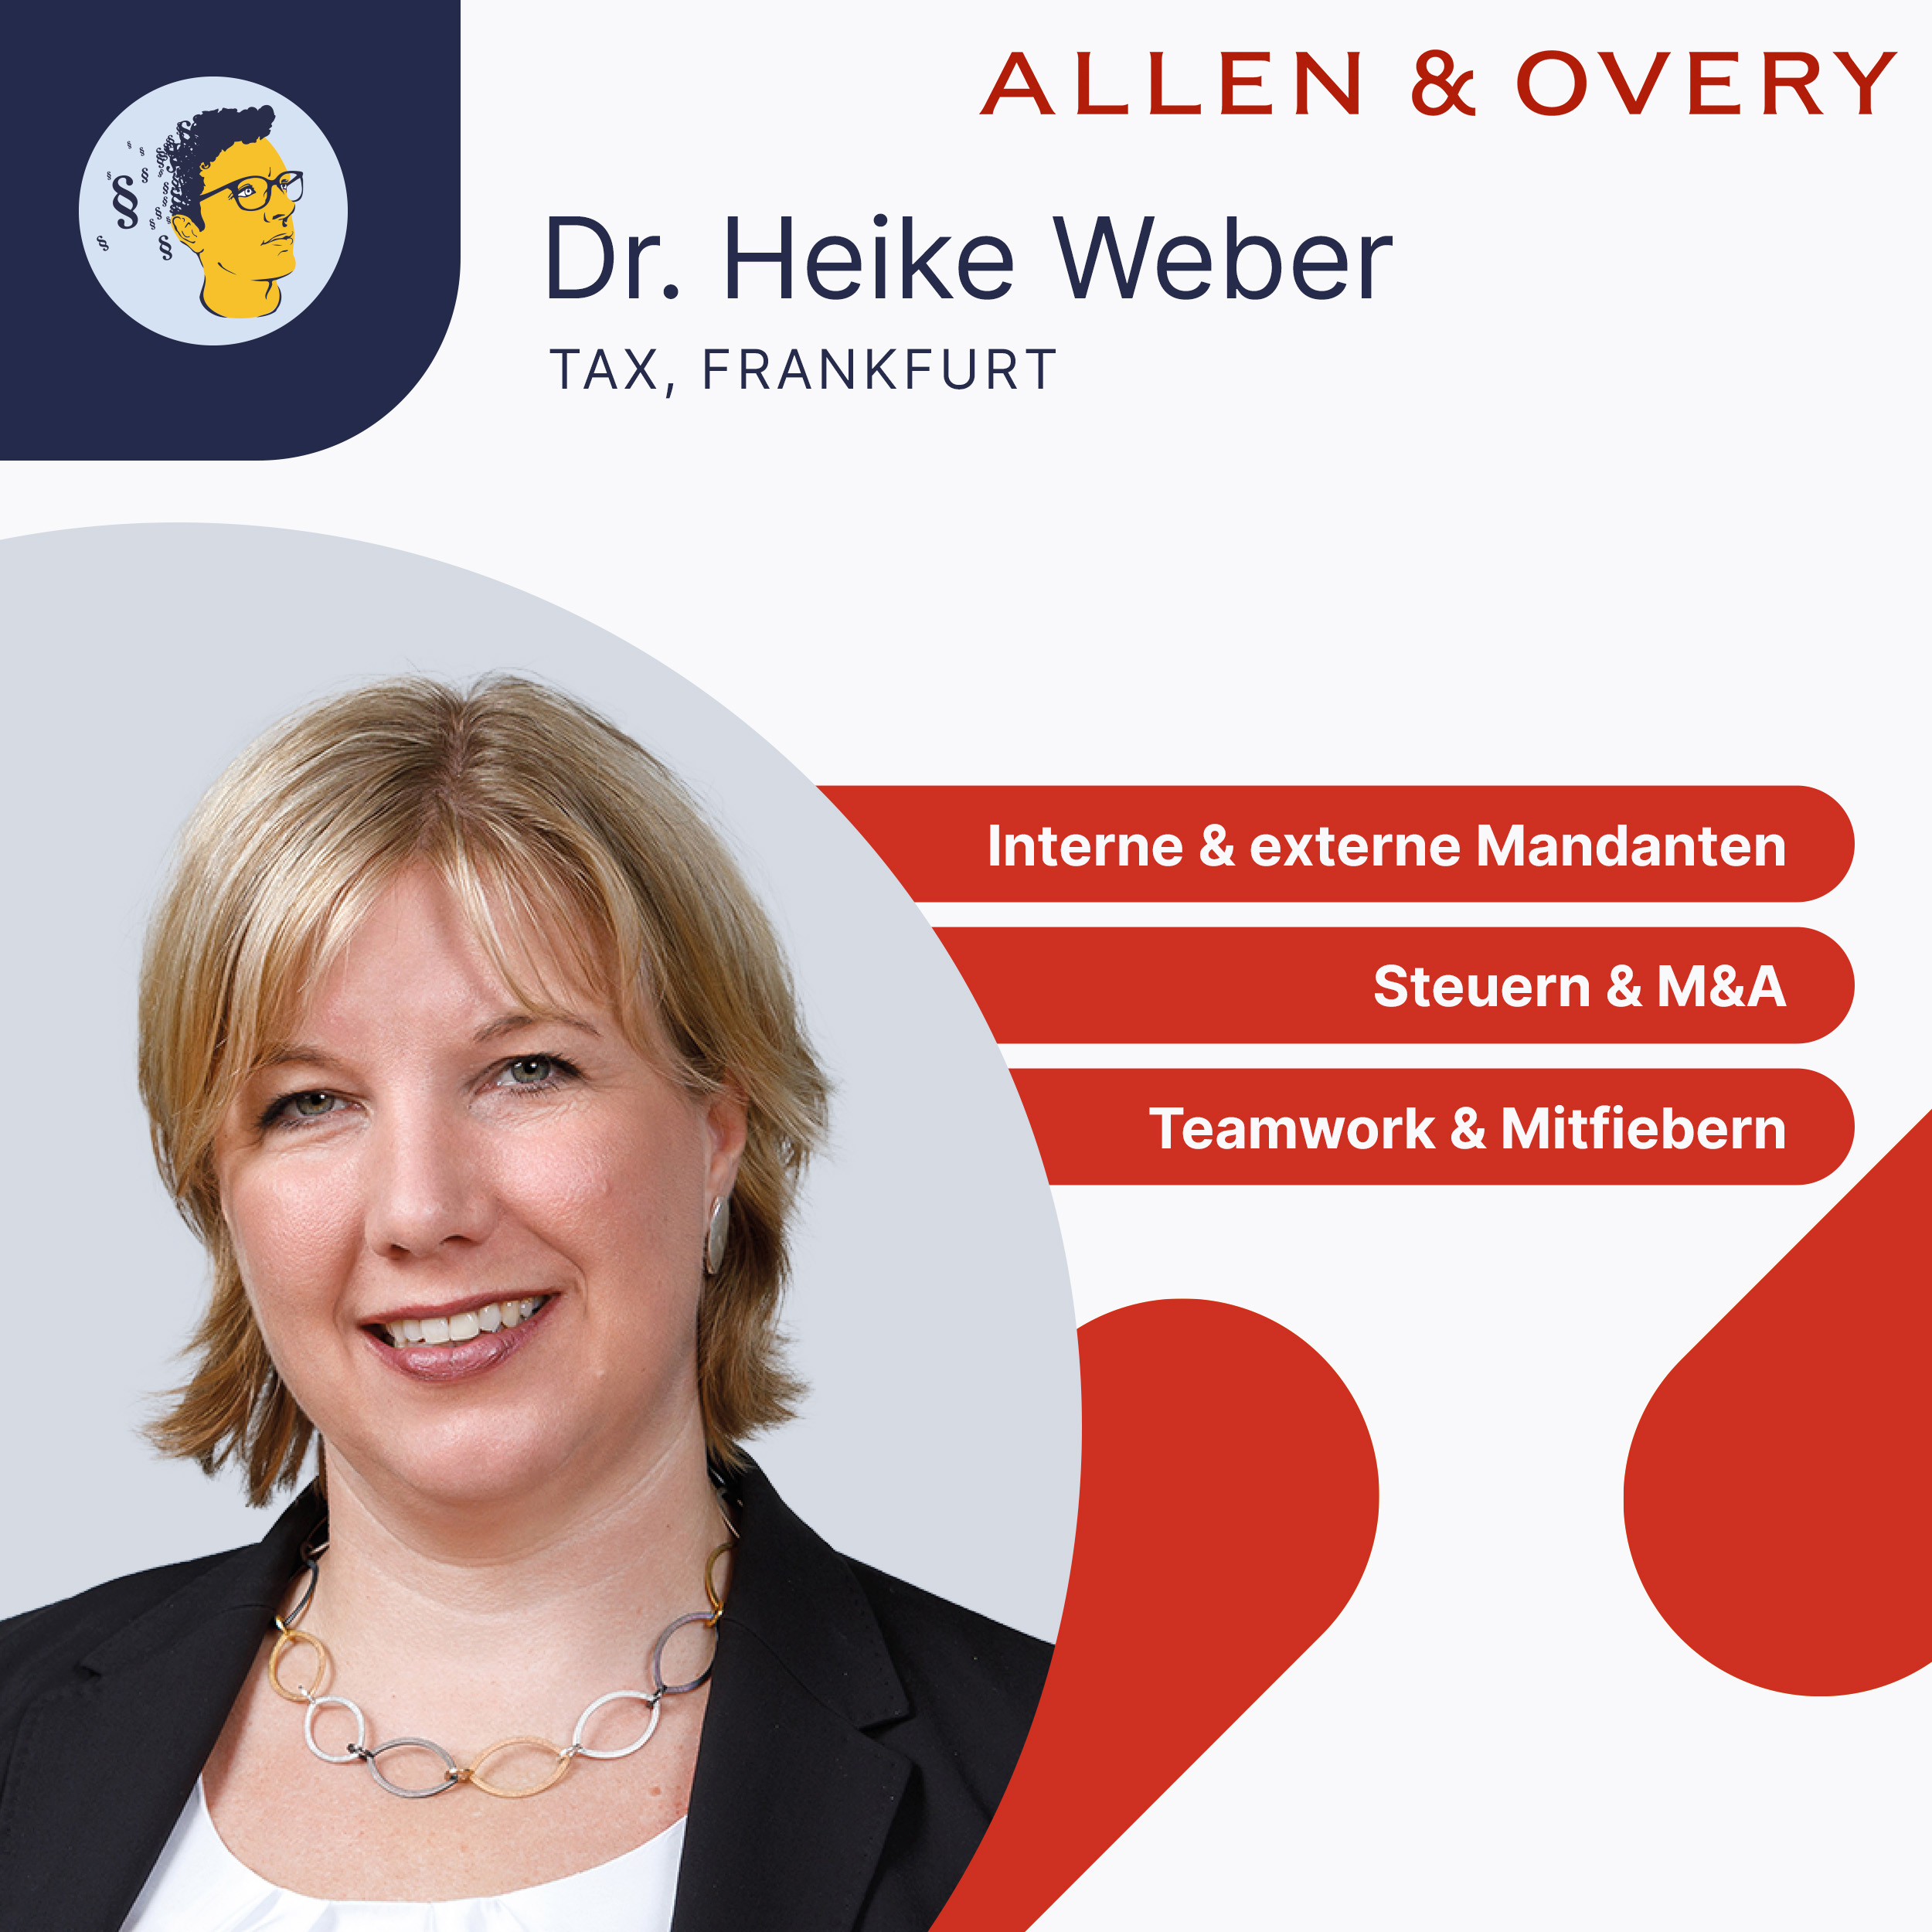 Dr. Heike Weber